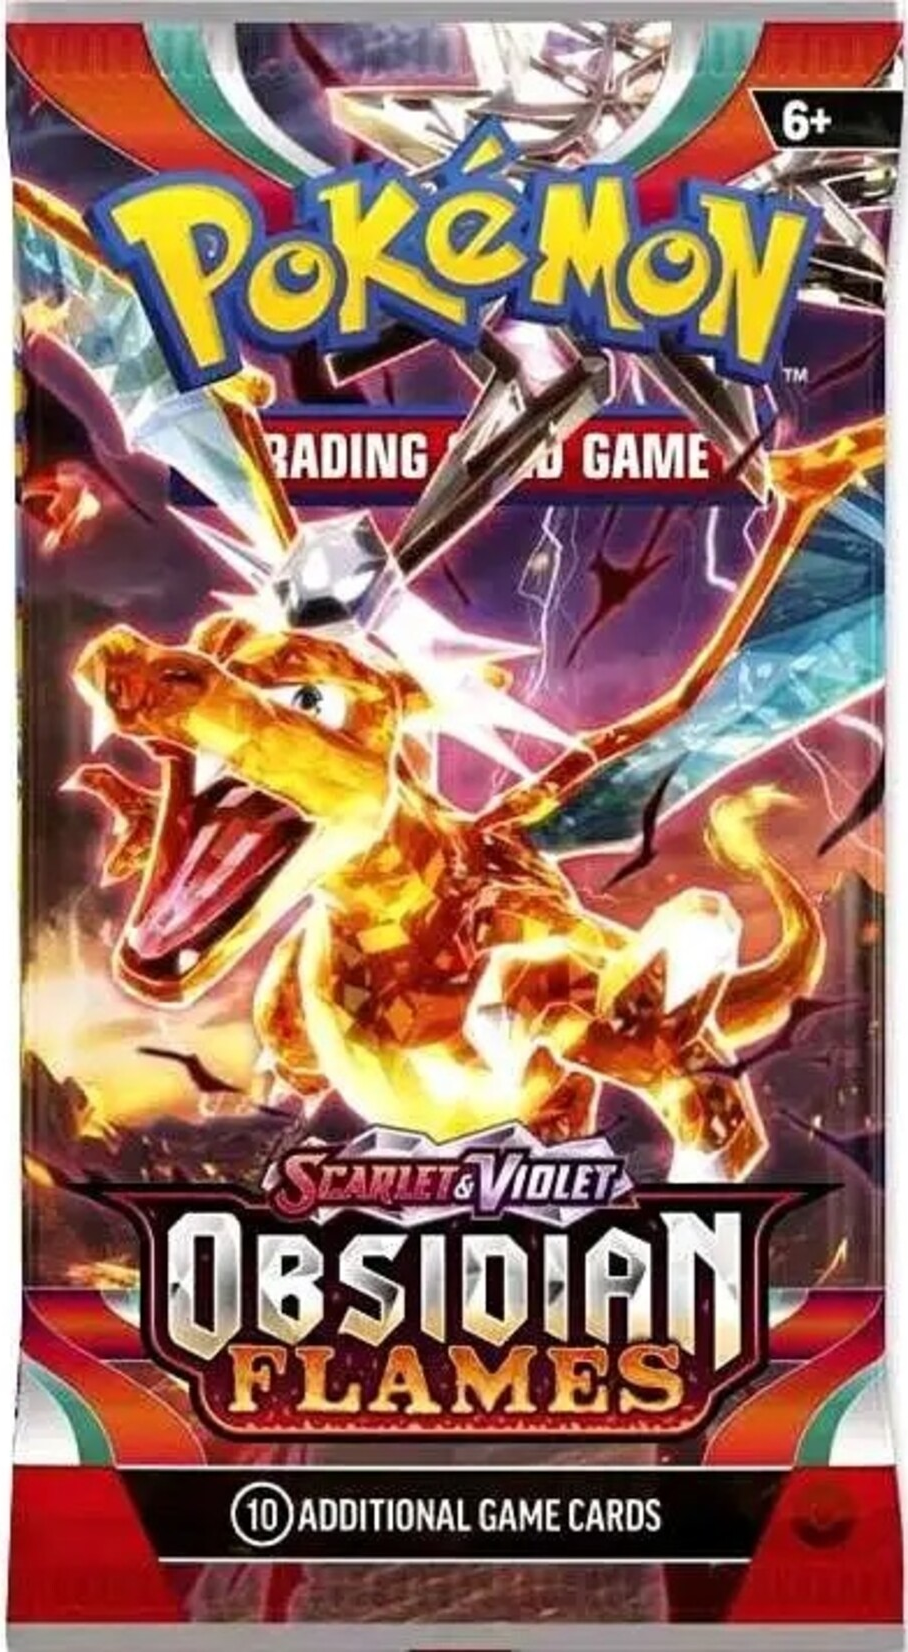 Pokémon Scarlet & Violet - Obsidian Flames Booster Pack